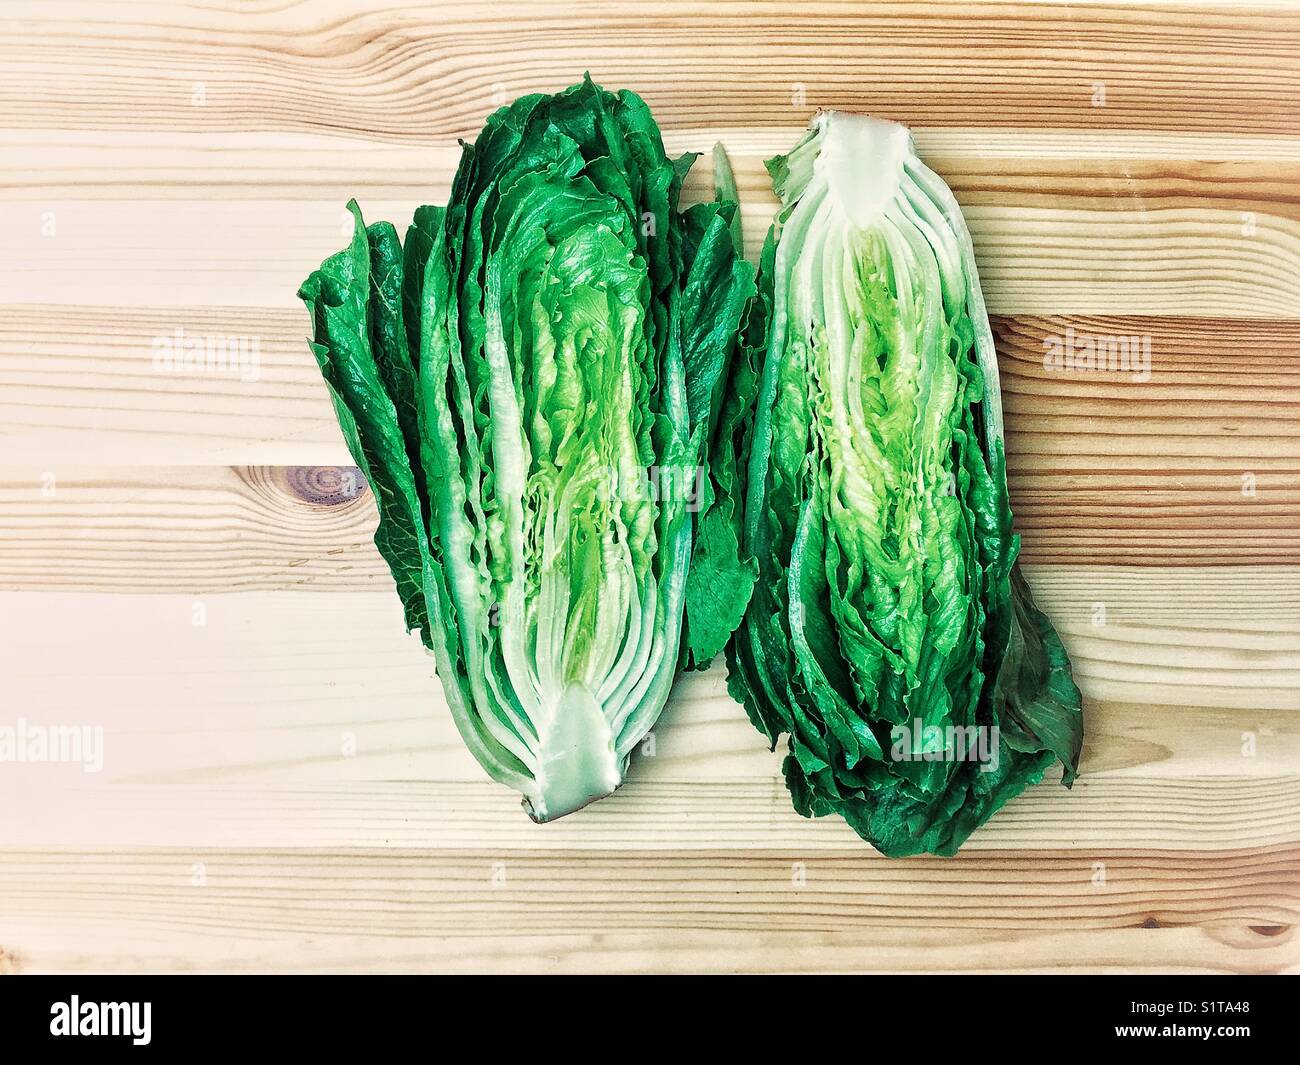 Romaine lettuce cut in half on wooden board Stock Photo